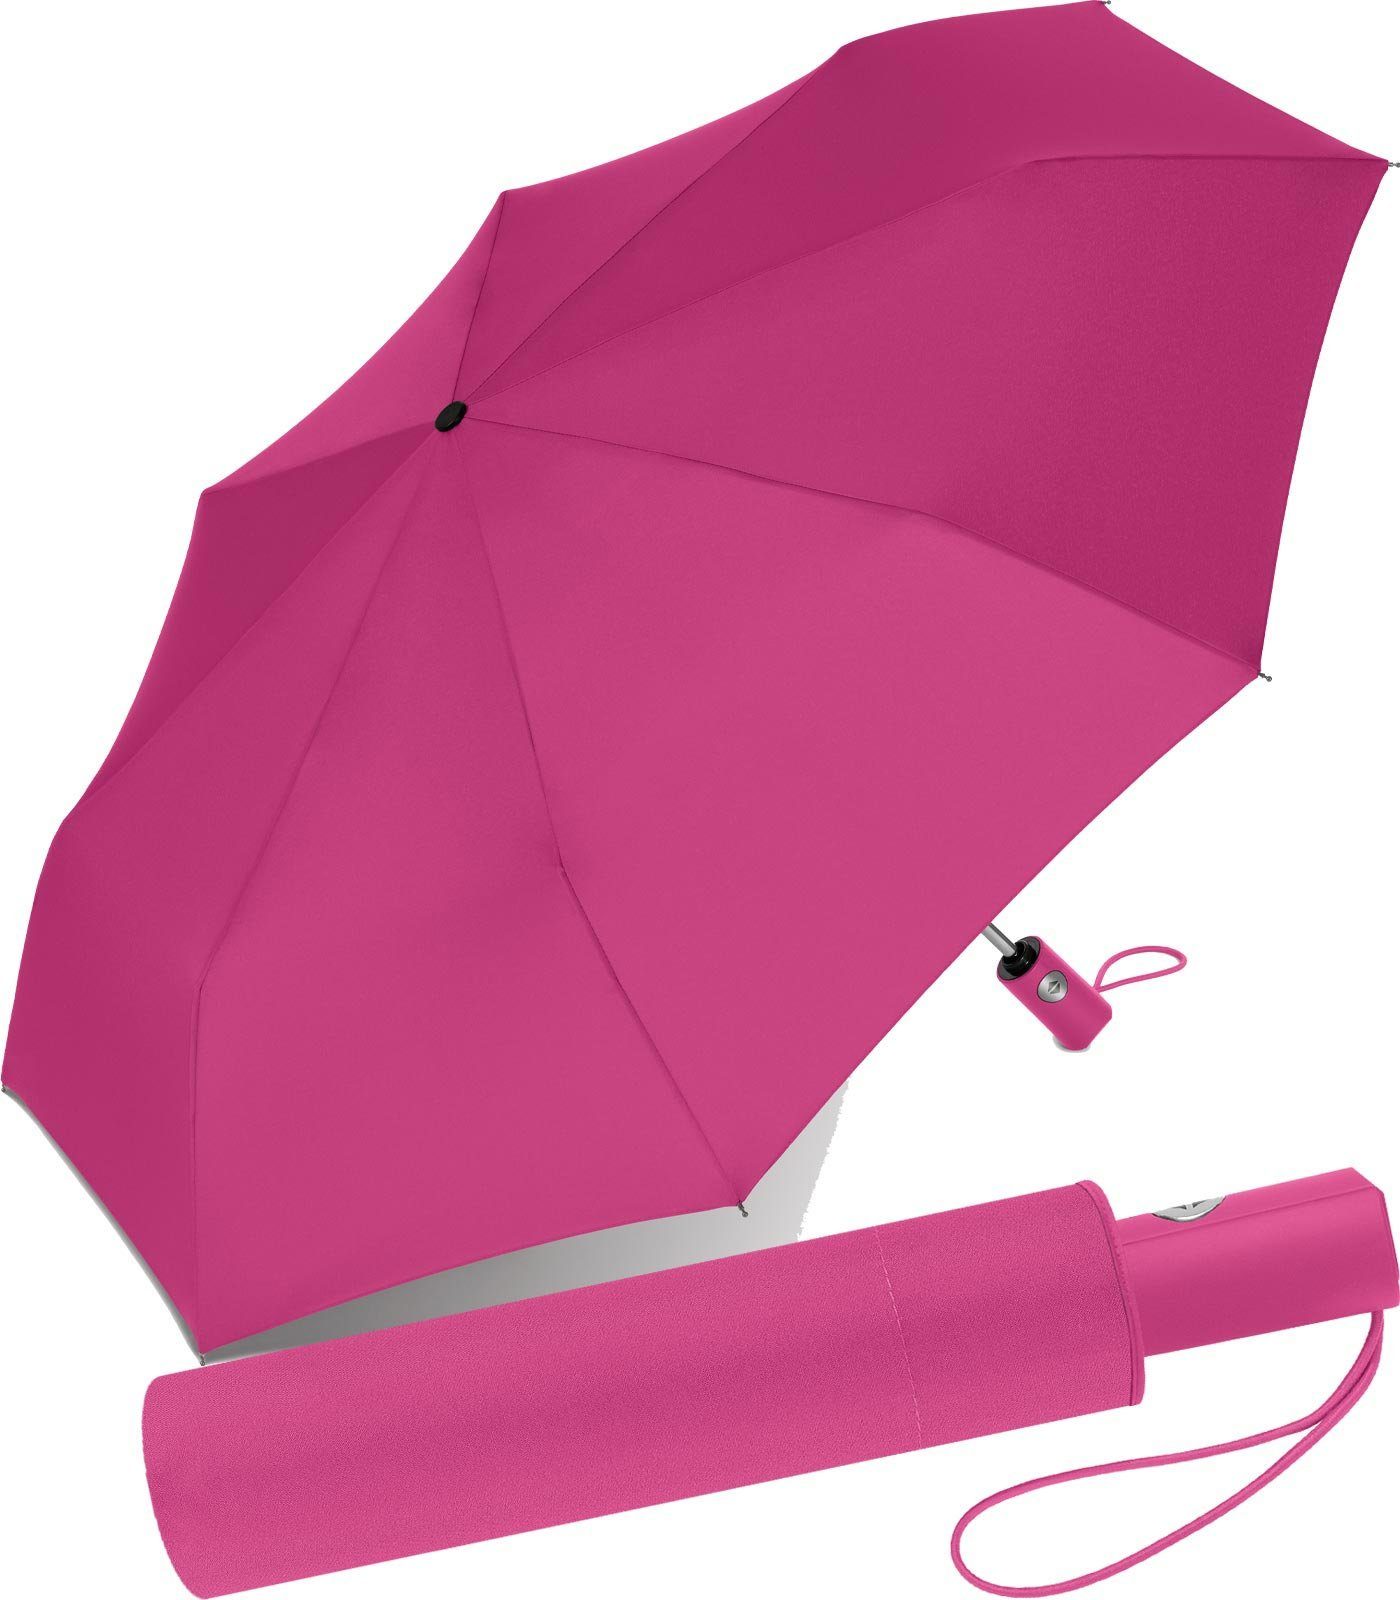 RS-Versand Taschenregenschirm schöner stabiler Regenschirm mit Auf-Zu-Automatik, für Damen und Herren, in vielen modischen Farben pink